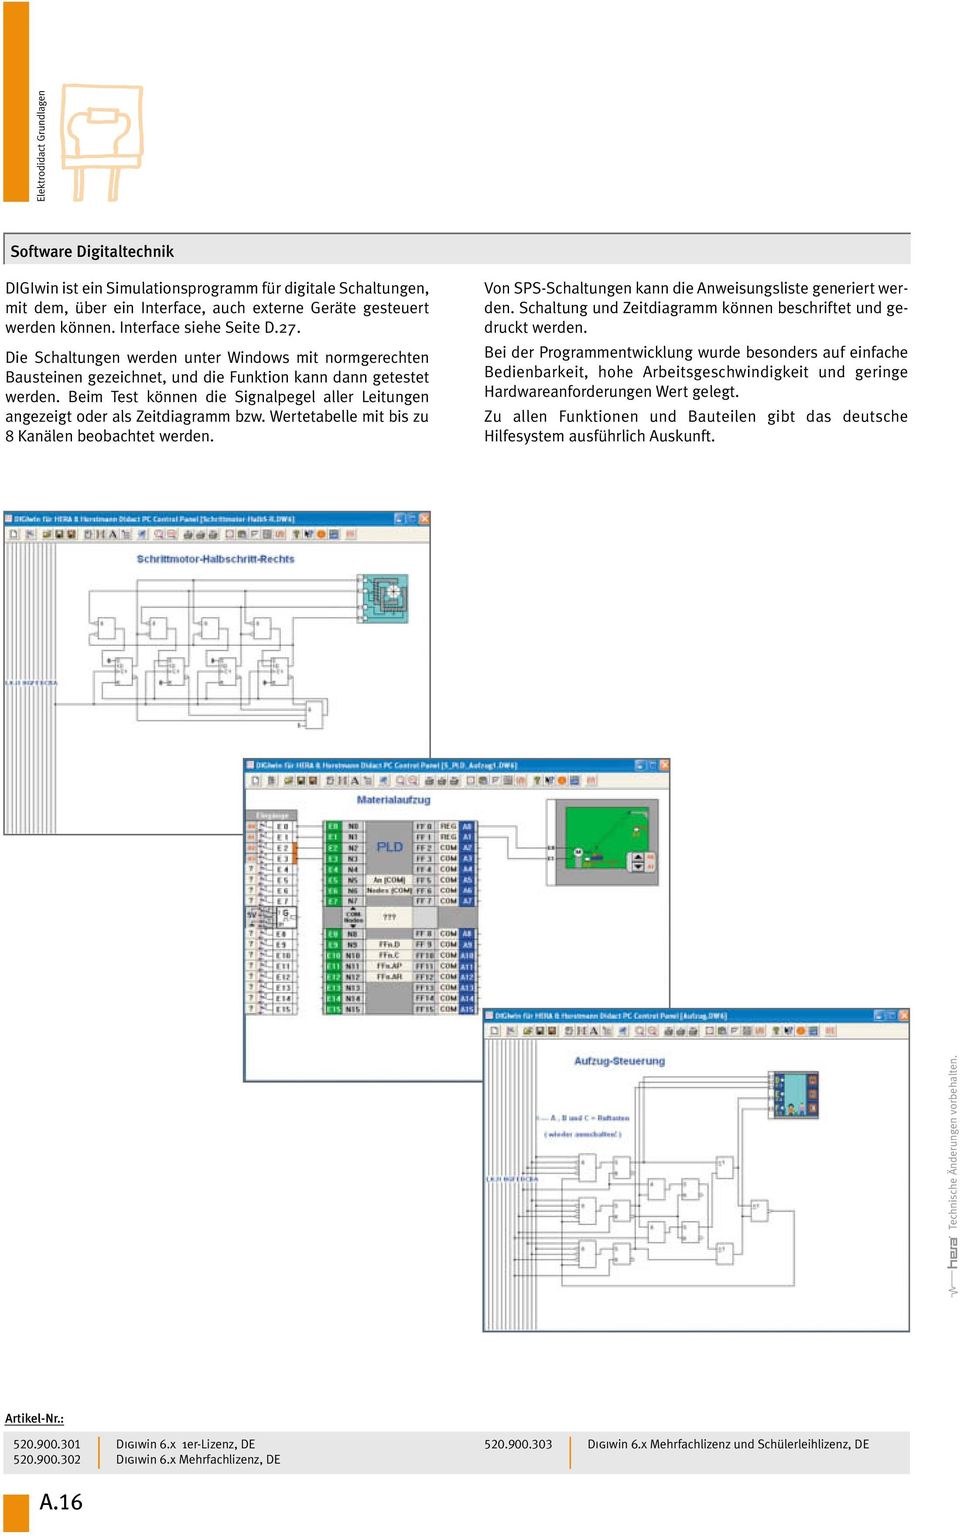 Interface siehe Seite D.27. Die Schaltungen werden unter Windows mit normgerechten Bausteinen gezeichnet, und die Funktion kann dann getestet werden.